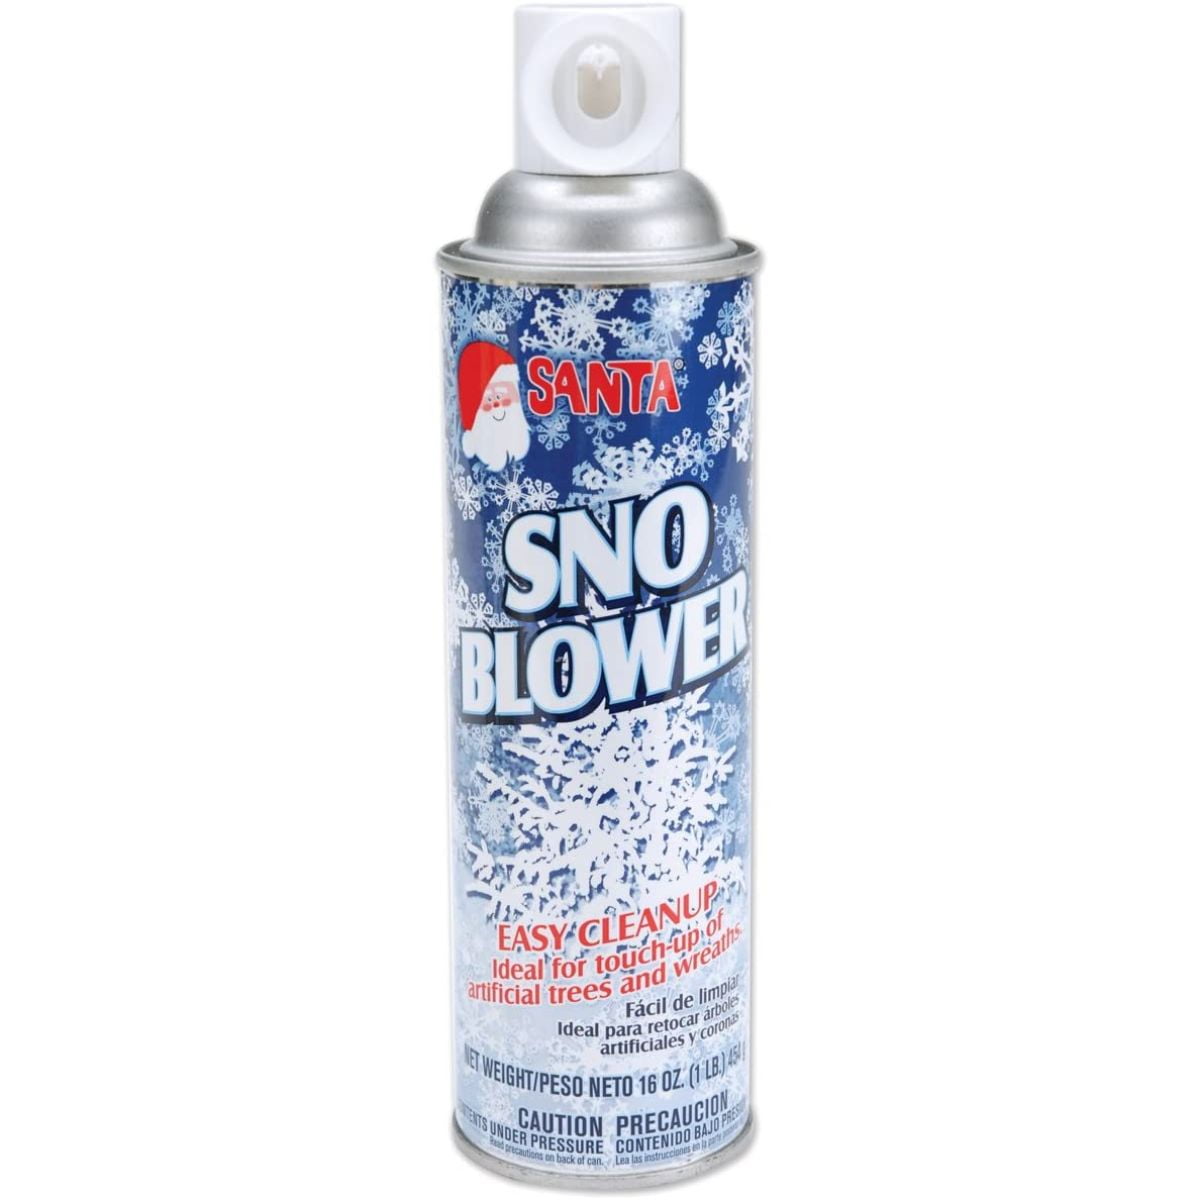 Spray Snow: Santa's Spray Snow 12/cs: SPRA013 - Evans Christmas Supply